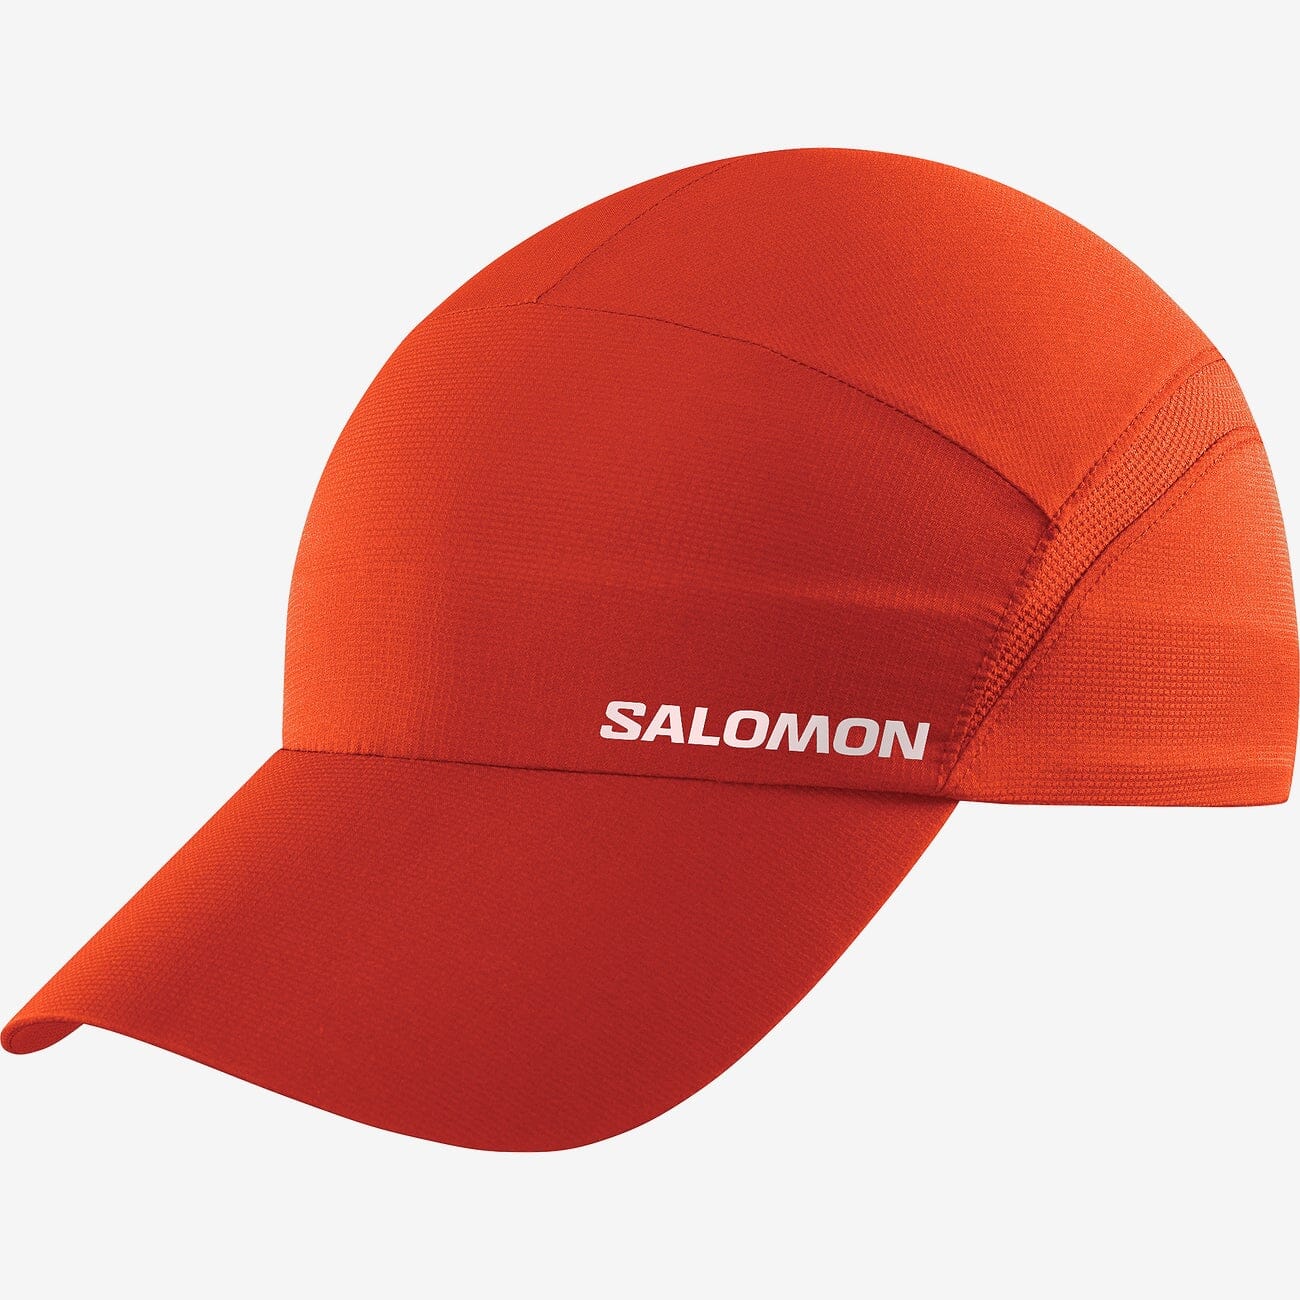 Salomon XA Cap Unisex Fiery Red S/M 